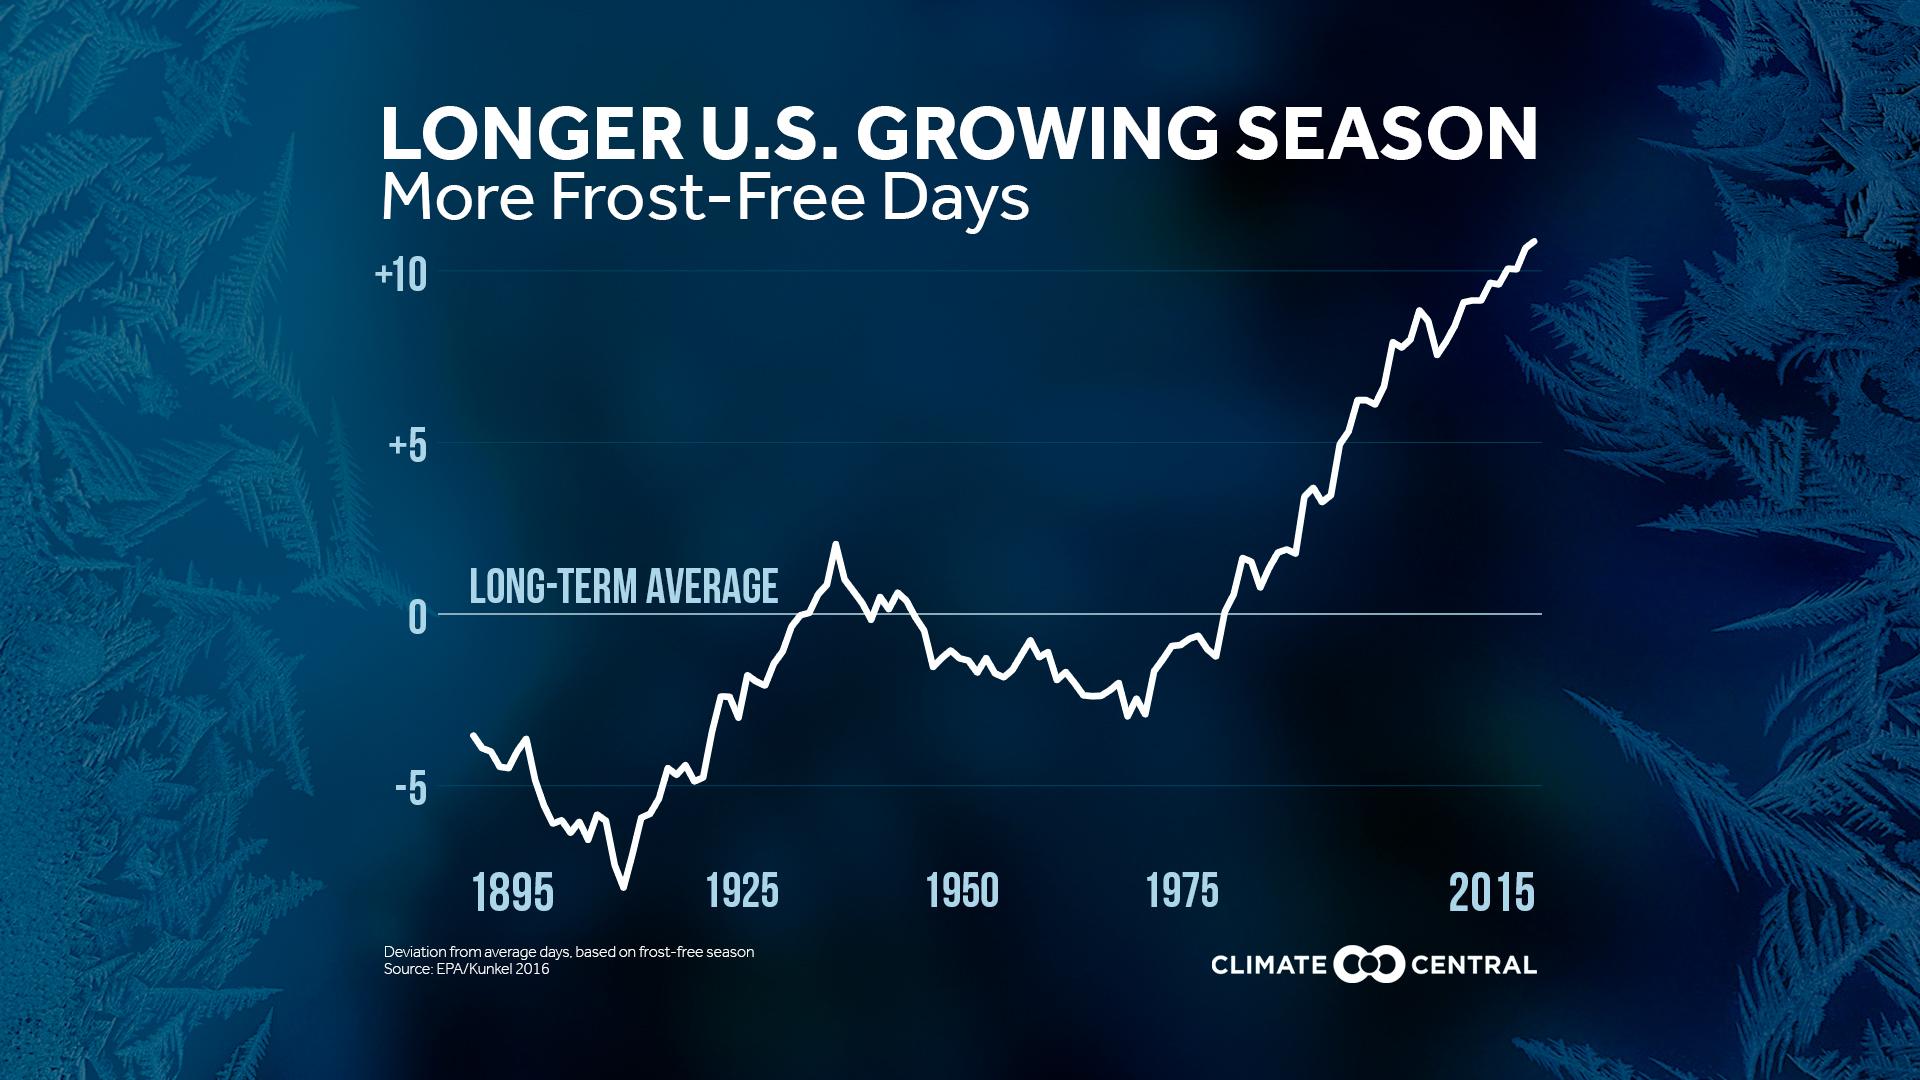 Set 1 - First Frost: Frost-Free Season Getting Longer